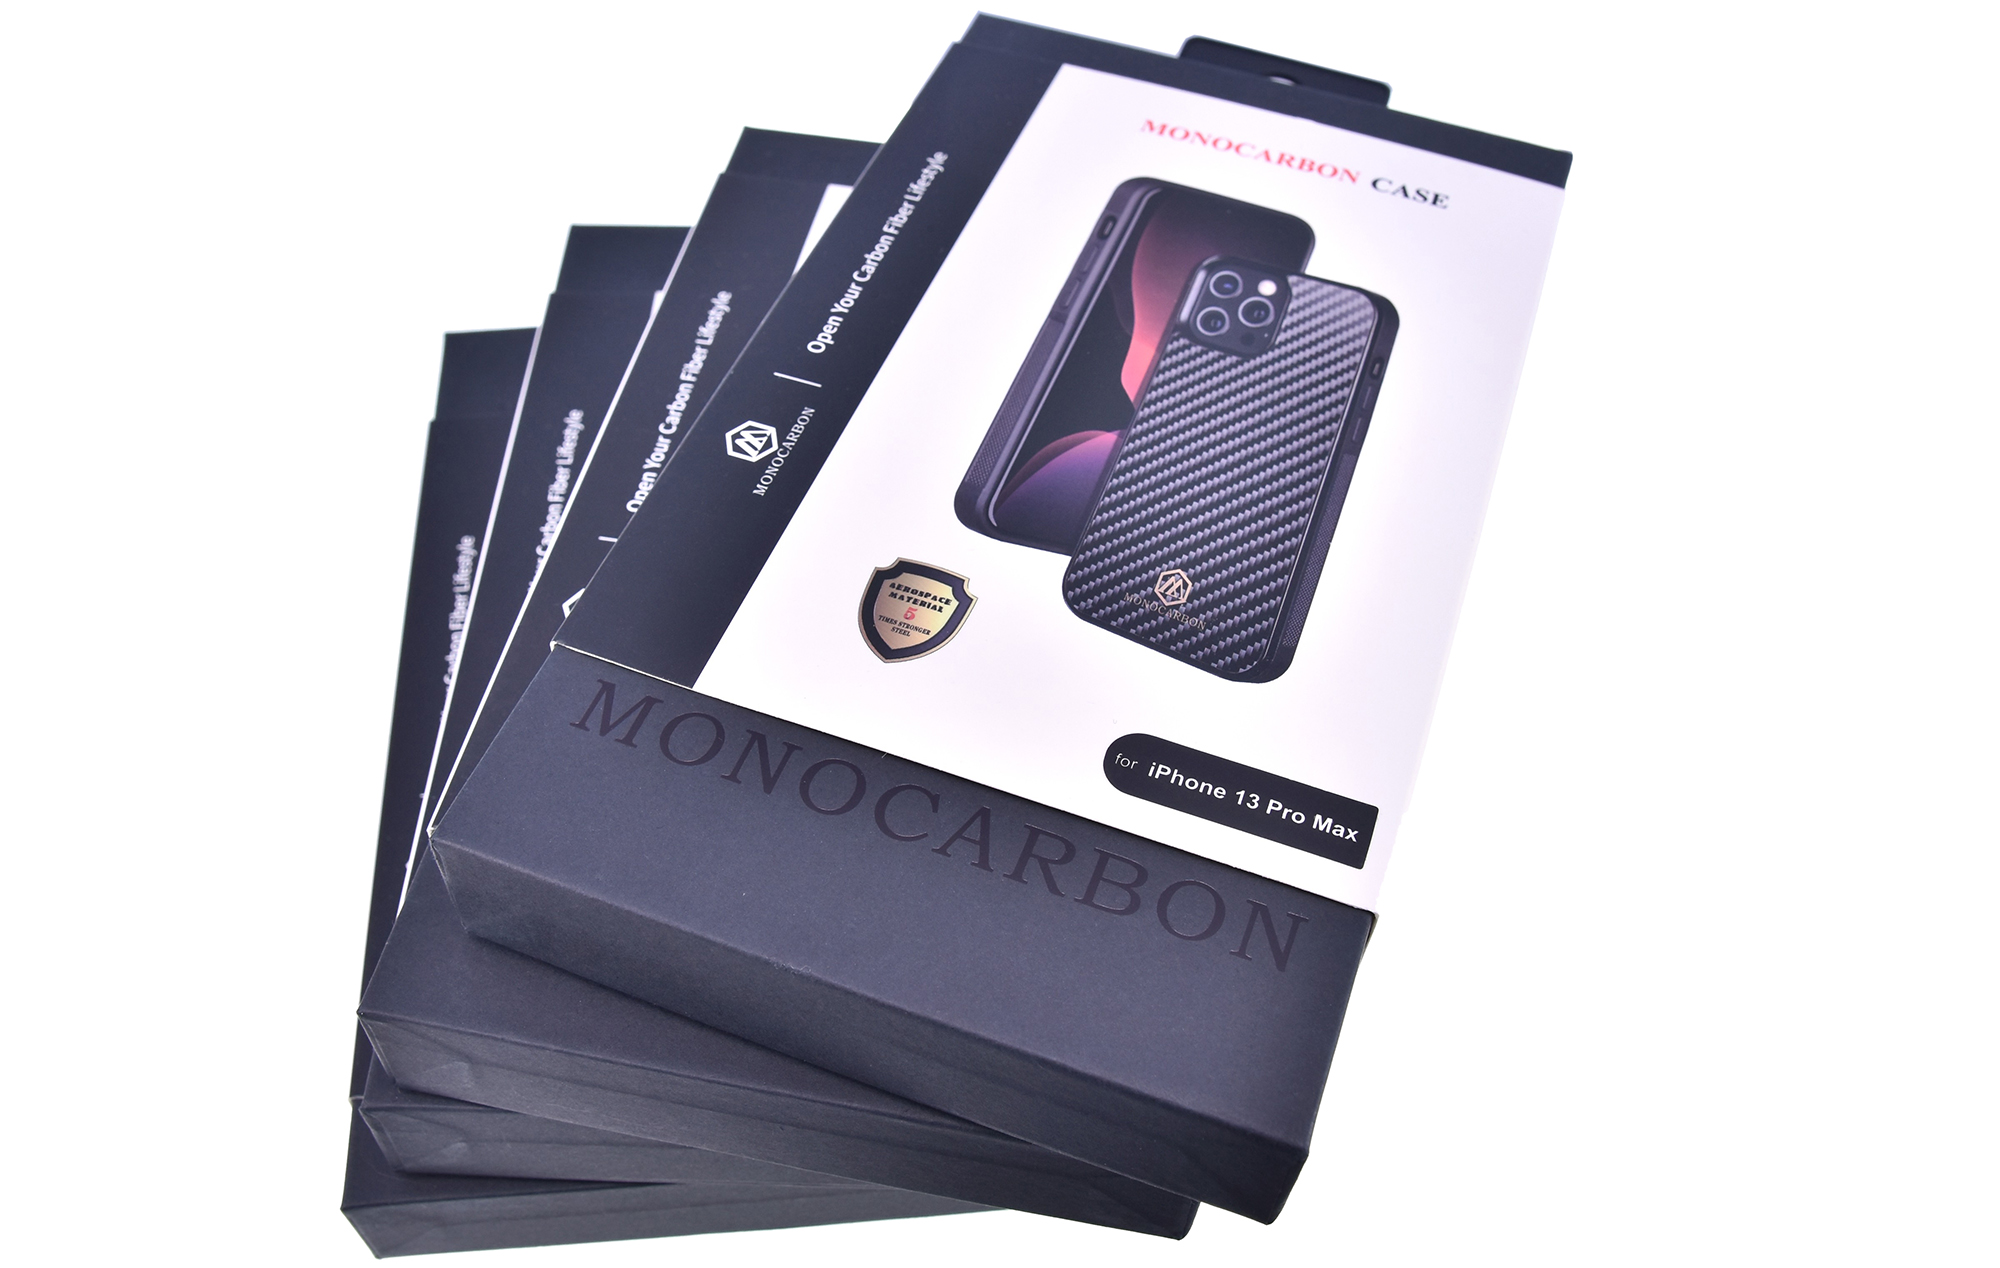 质感出众 墨罗iphone 13 Pro Max&mini碳纤维手机壳优科技开箱